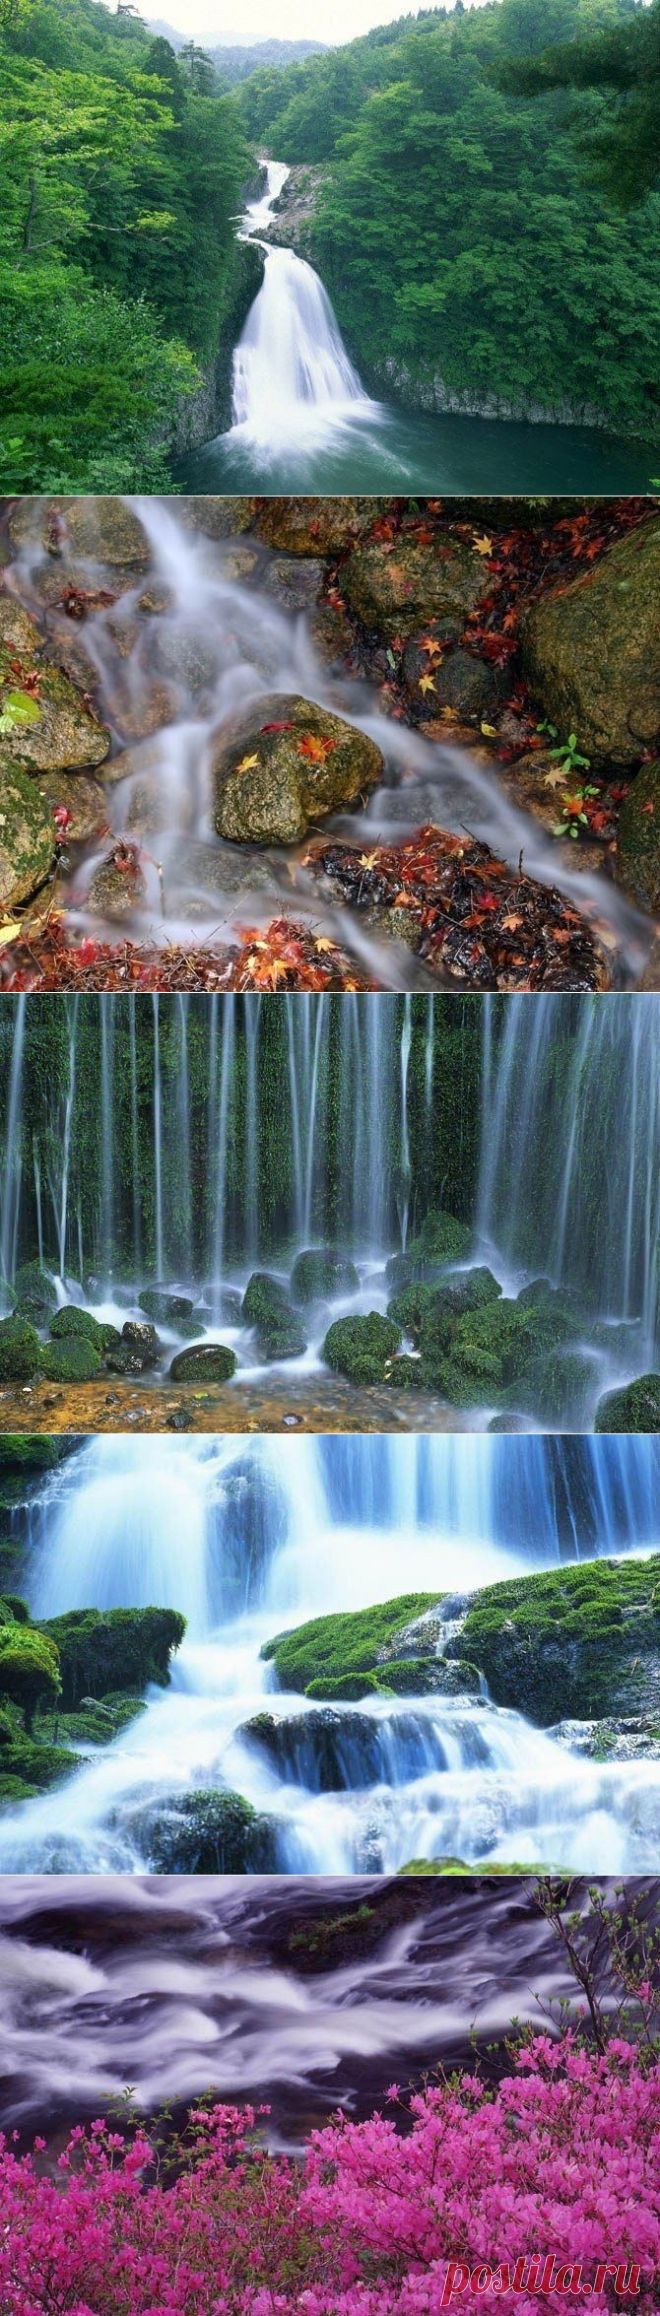 Японские водопады. Подсчитано, что в Японии есть 2488 водопадов высотой не менее 5 м. К этому надо добавить, что по старой религиозной традиции японцы считают водопады местом обитания духов. Чем выше и грознее водопад, тем мощнее и почтеннее божество, выбравшее это место для своего обитания. Отсюда и глубочайшее уважение людей к "водяным драконам".